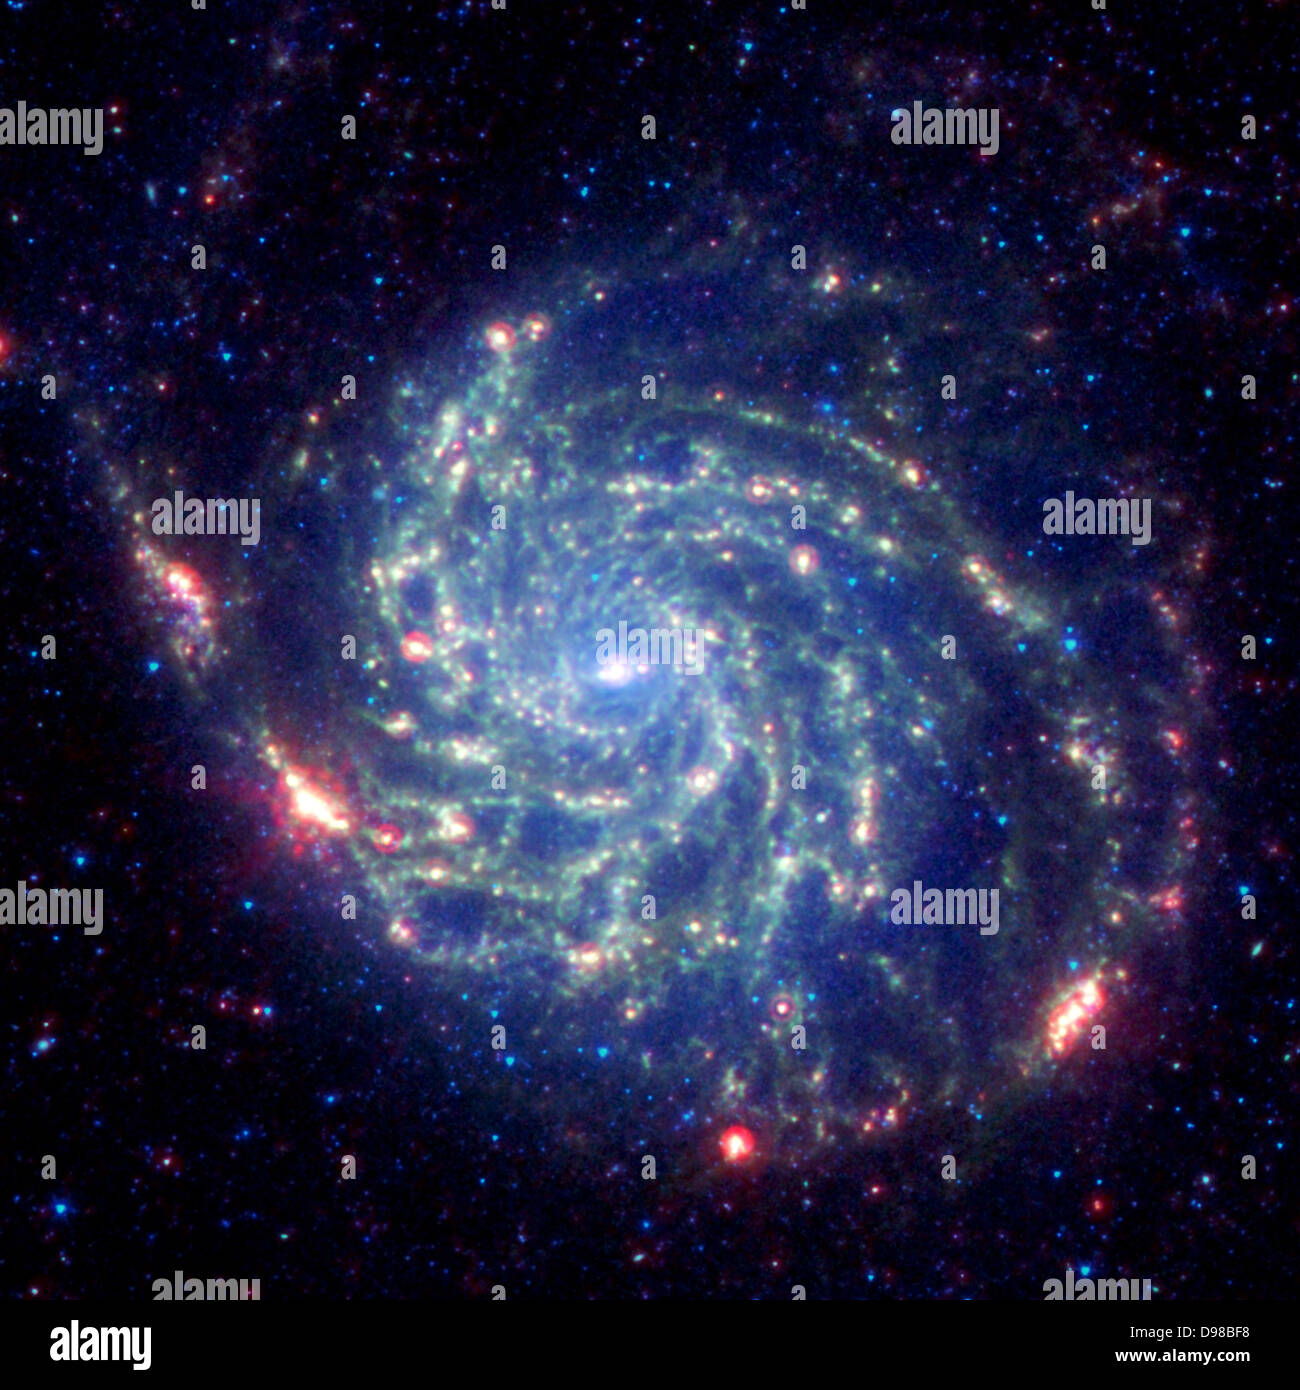 Die Galaxie Messier 101 ist eine wirbelnde Spirale von Sternen, Gas und Staub. Messier 101 ist fast doppelt so groß wie unsere Milchstraße. Spitzers Ansicht, im infraroten Licht berücksichtigt, zeigt feine Staub Gassen der Galaxie als gelb-grüne Filamente. Solche dichten Staubwolken sind, in denen neue Sterne bilden können. In diesem Bild, Staub durch das Licht der heiße, junge Sterne leuchtet rot erwärmt. Der Rest von Hunderten der Galaxie aus Milliarden von Sternen sind weniger prominente und bilden ein blauer Dunst. Astronomen können Infrarotlicht verwenden Sie die staubwolken wo Sterne geboren werden, zu prüfen. Stockfoto